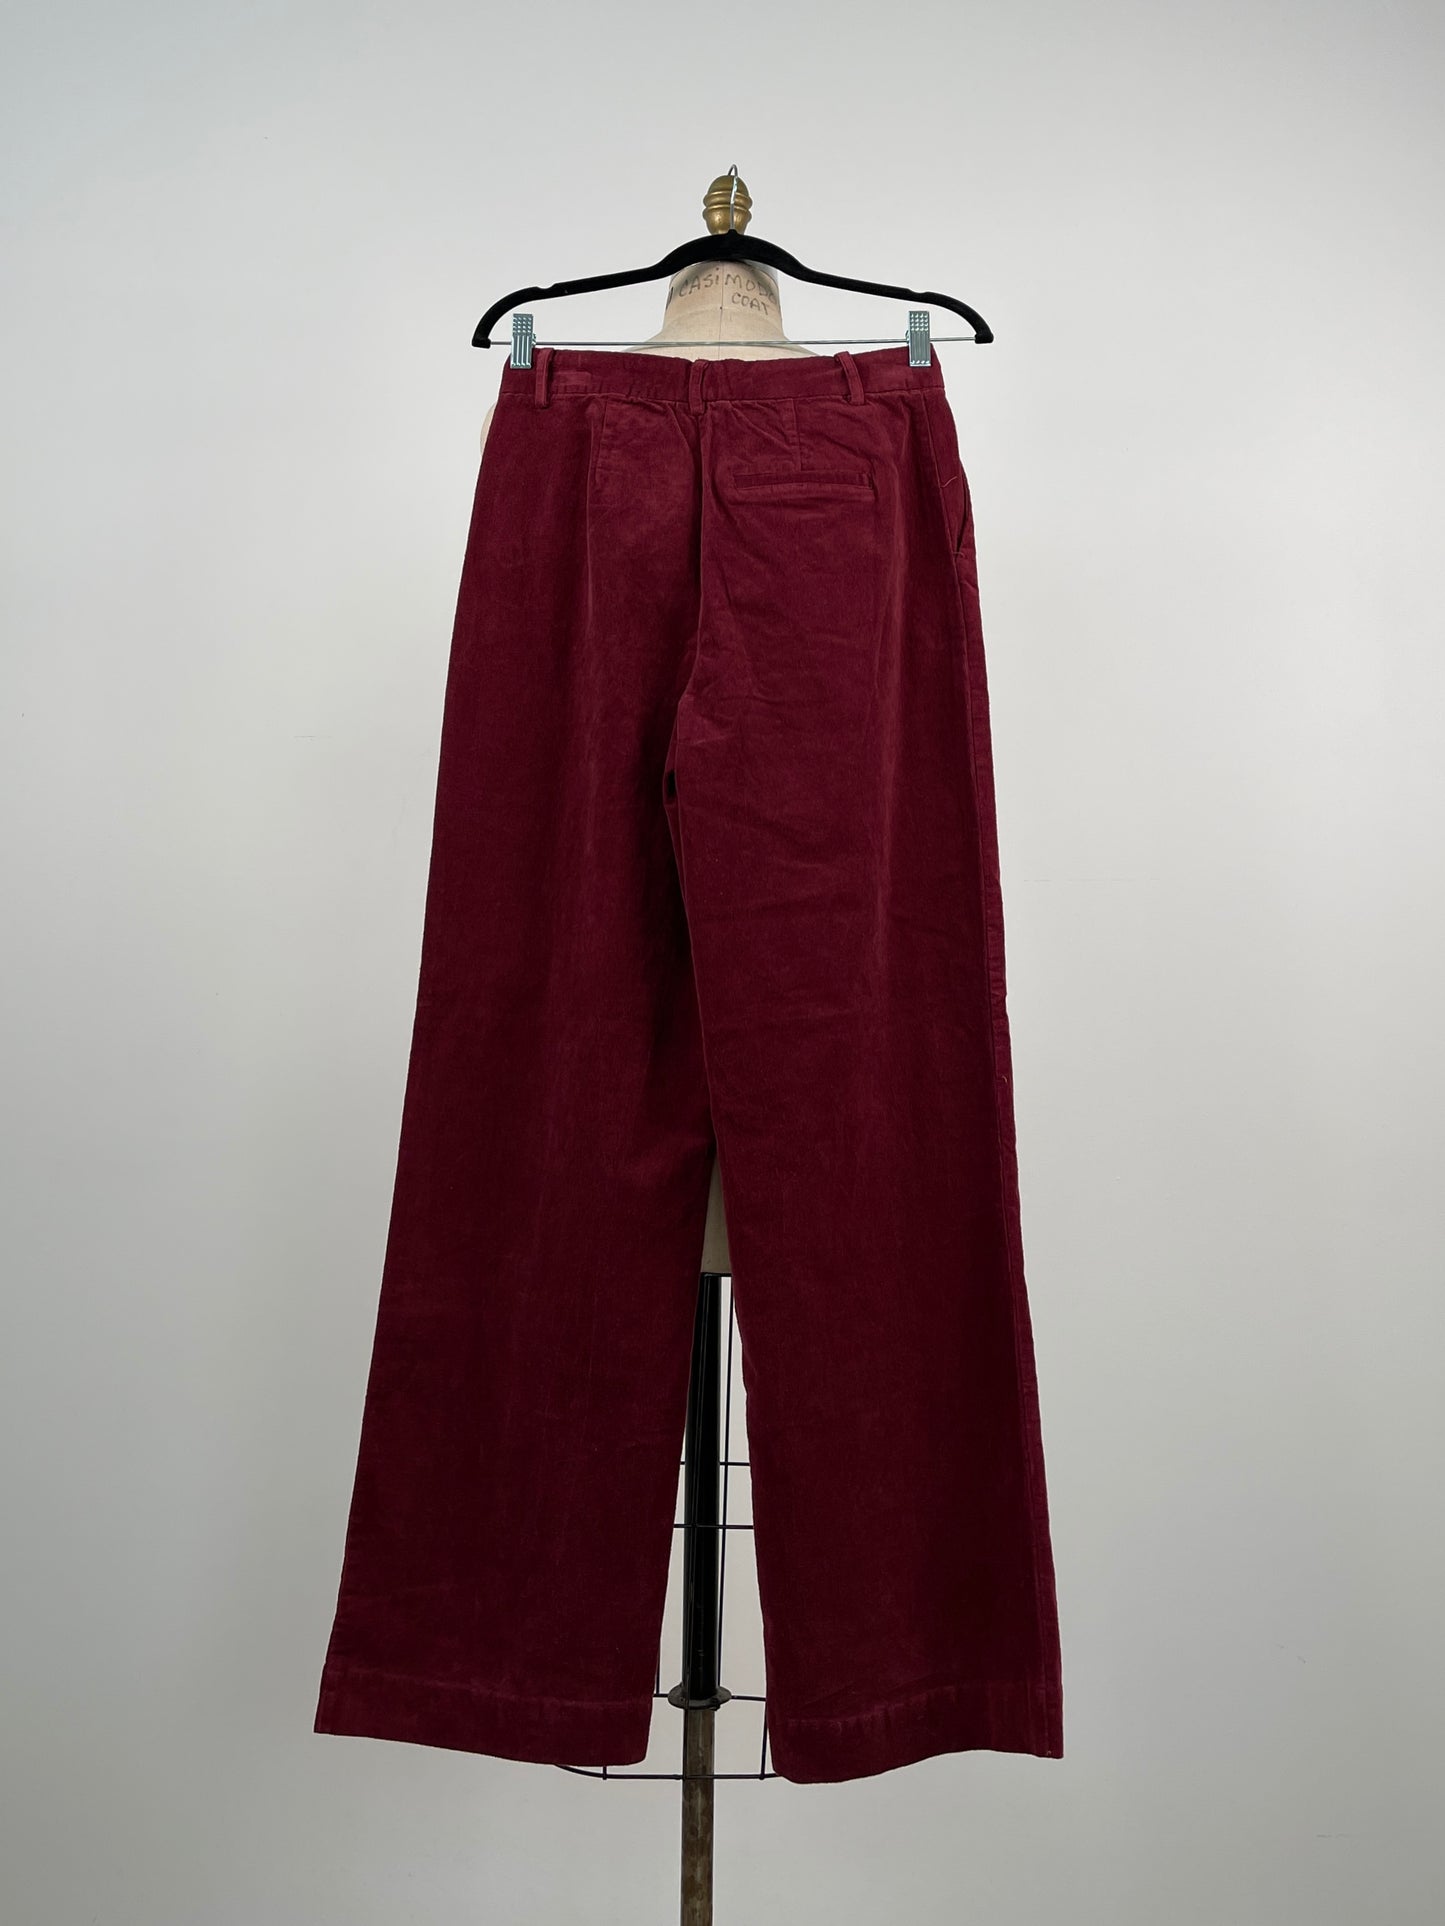 Pantalon en corduroy bordeau lavable (4-8-10)